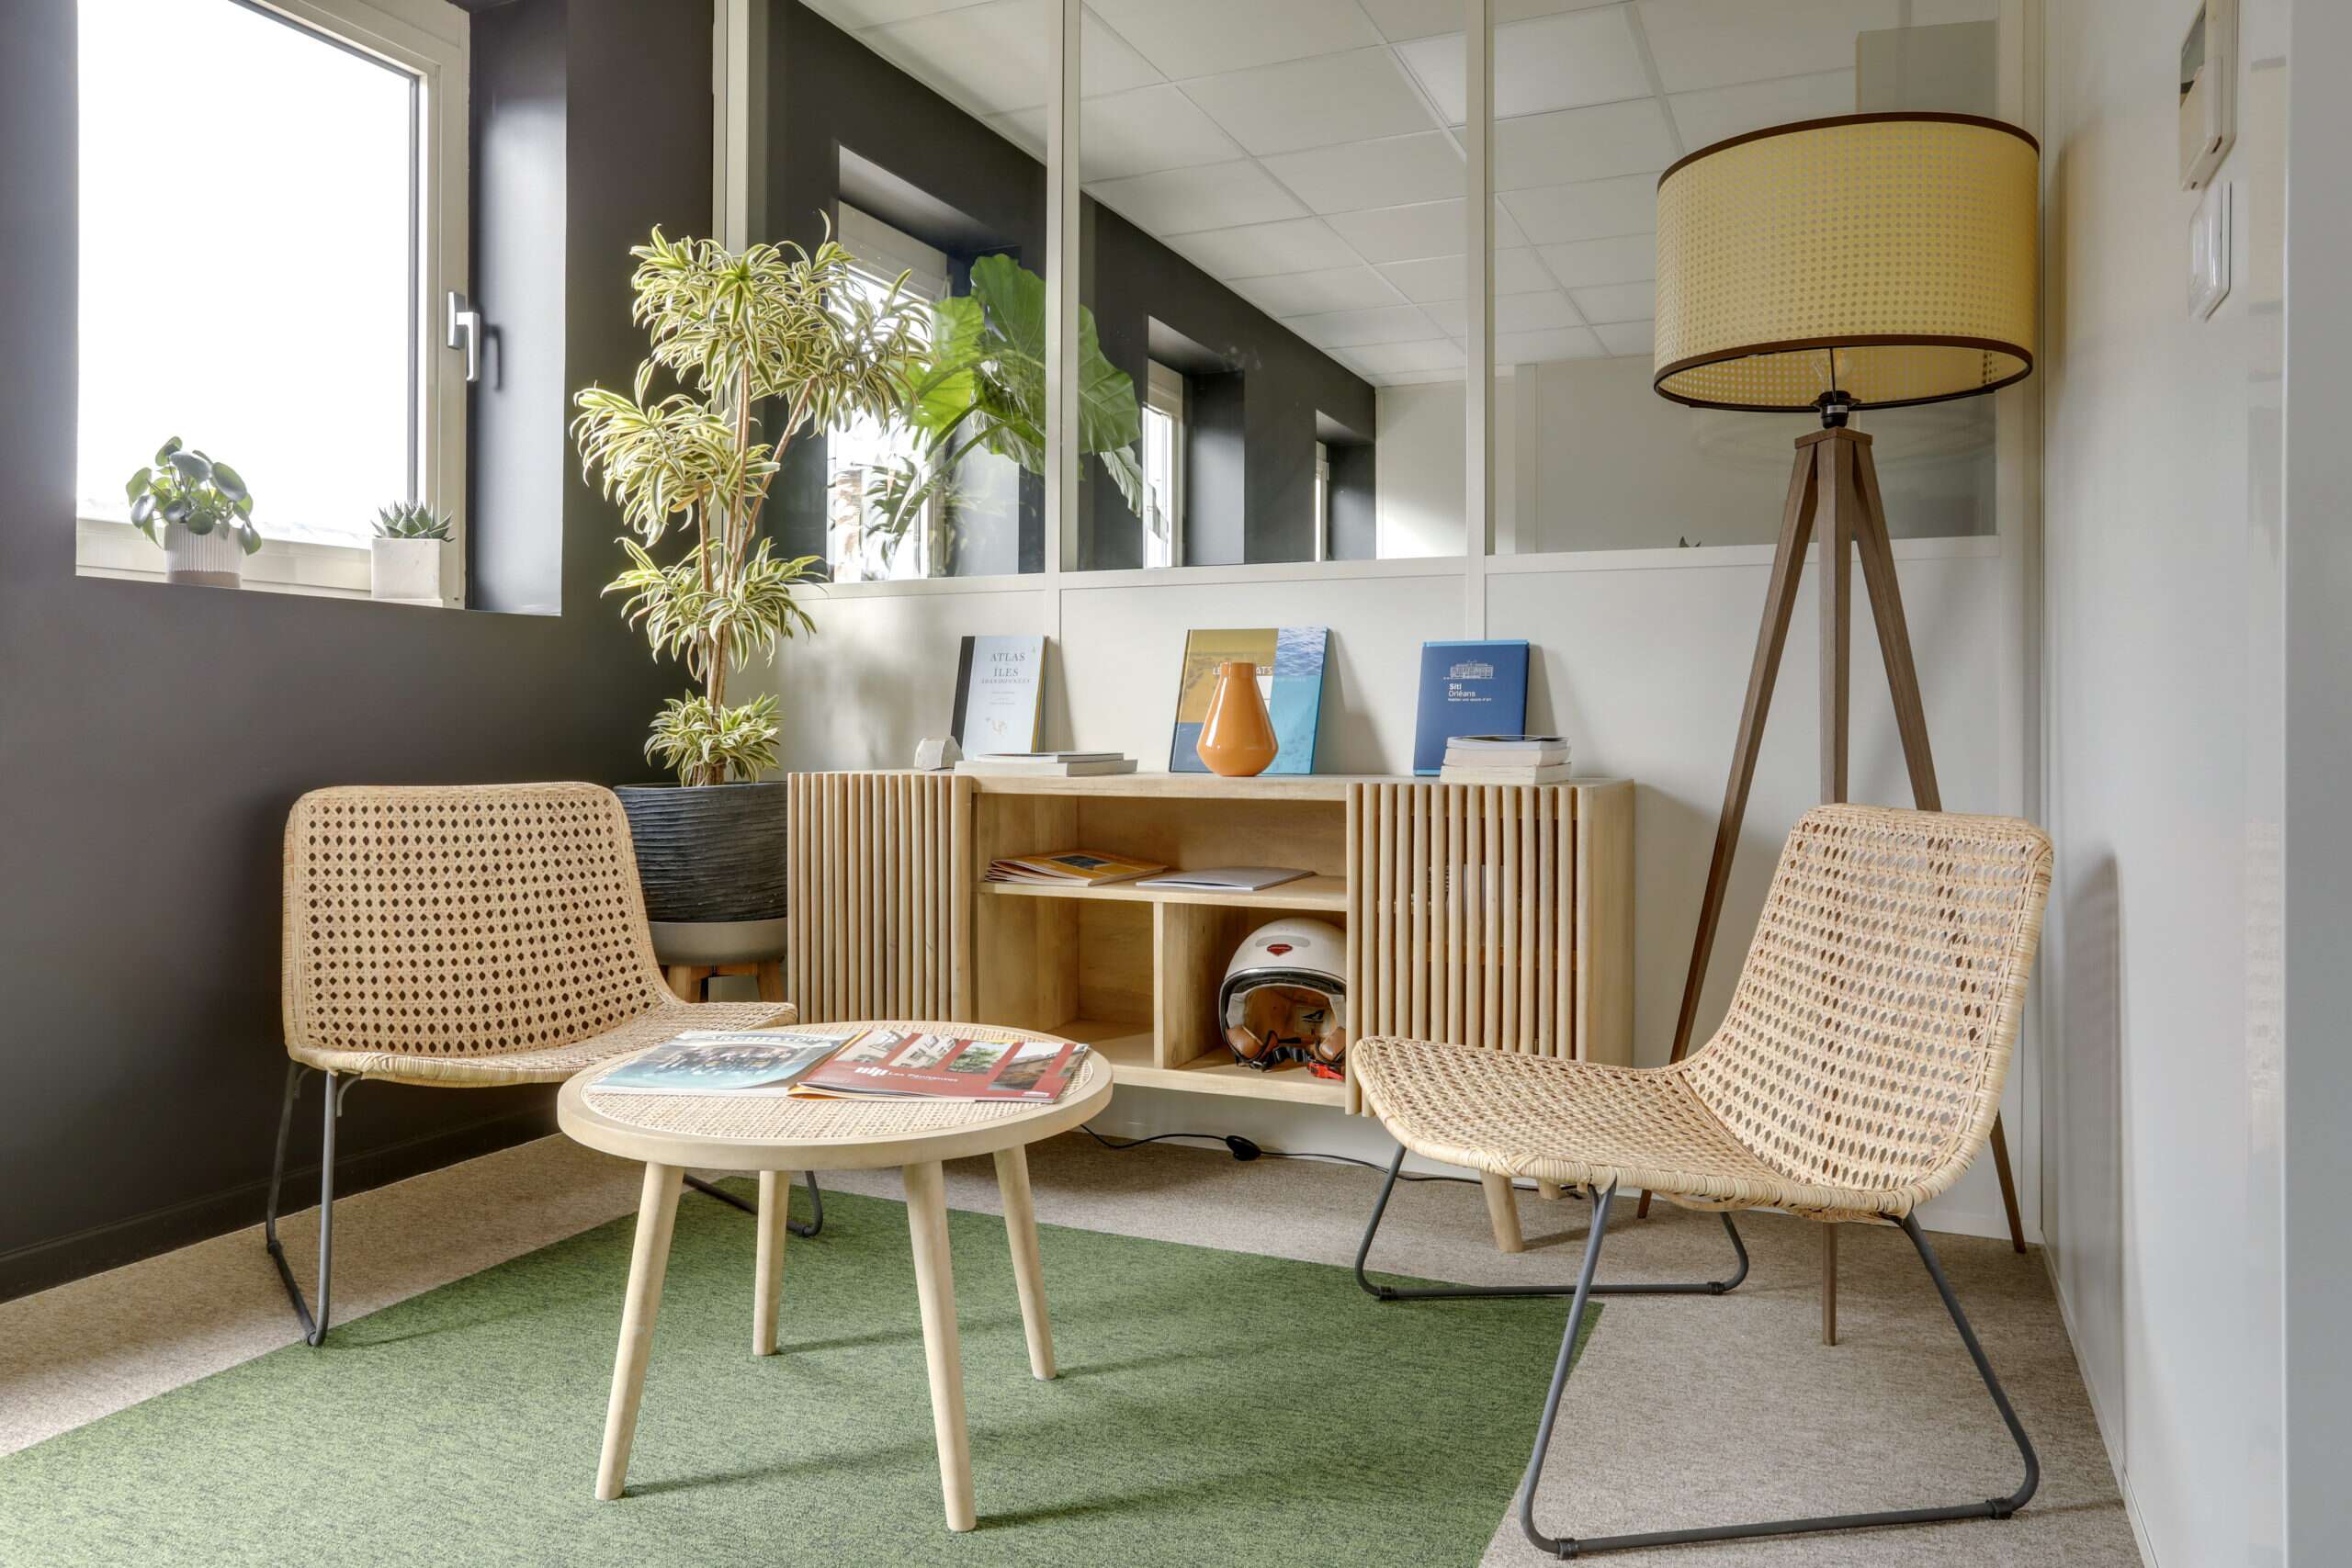 Drewno, rattan i naturalne kolory przybliżają ludzi do natury w biurach Altarea Cogedim w Lille, Francja